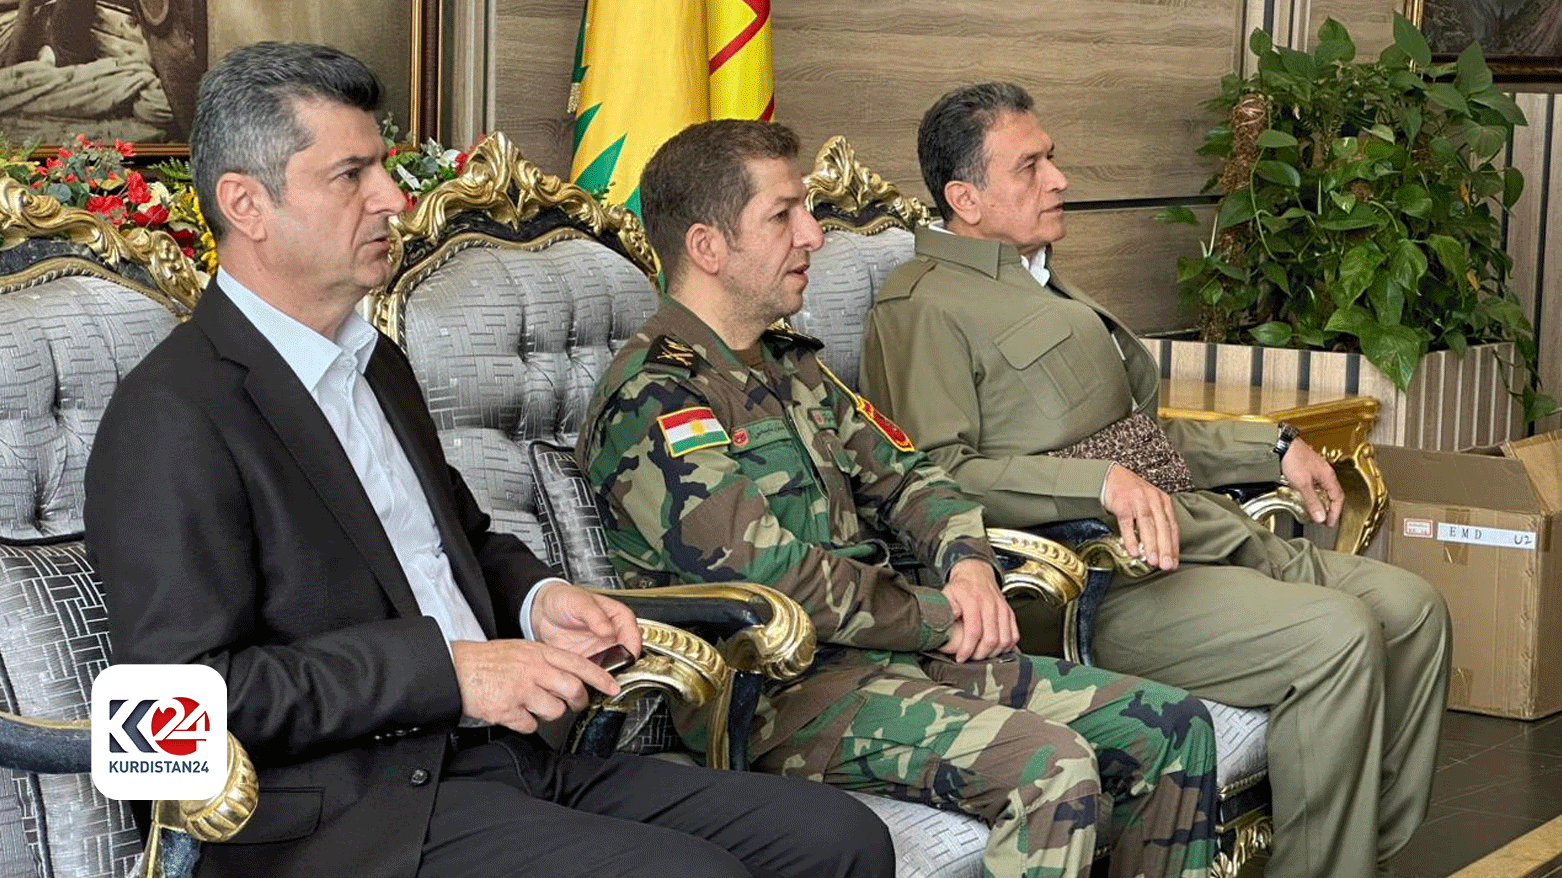 The photo shows Dohuk's Governor Ali Tatar (L) alongside KDP's President's representative Mansour Barzani (C) and KDP Politburo Member Sarbast Lazgin (R).